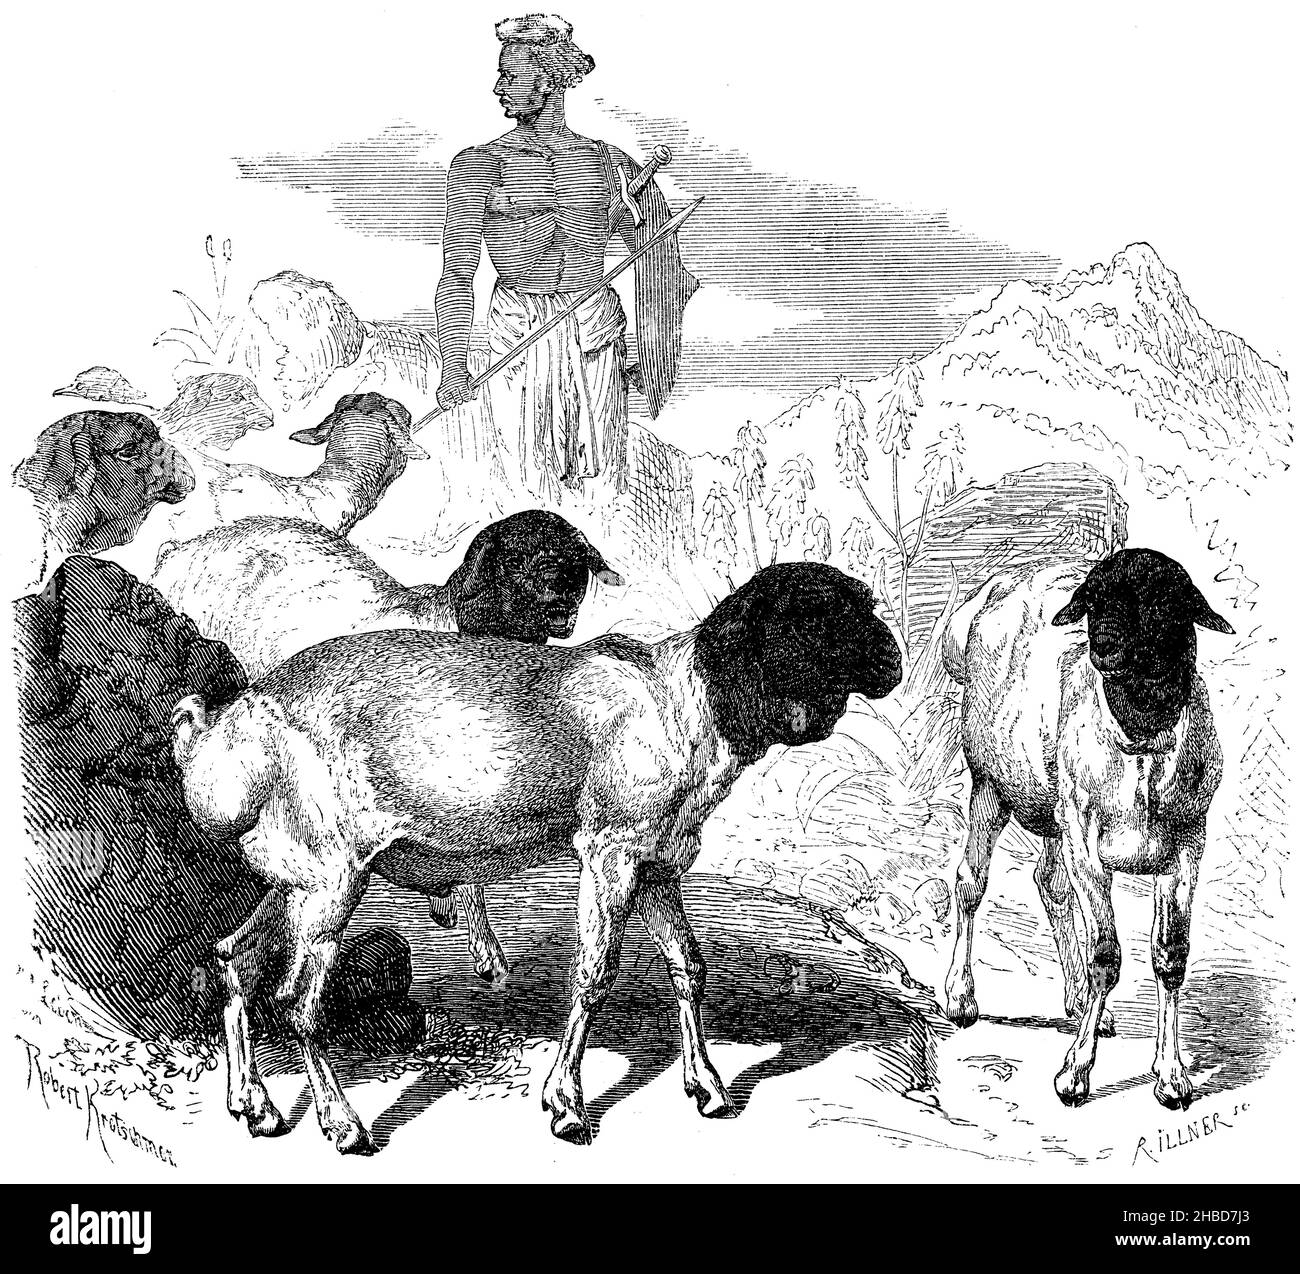 Persian fat ewe, , Robert Kretschmer und R. Illner (zoology book, 1870), Persisches Fettsteißschaf, Mouton gras de Perse Stock Photo